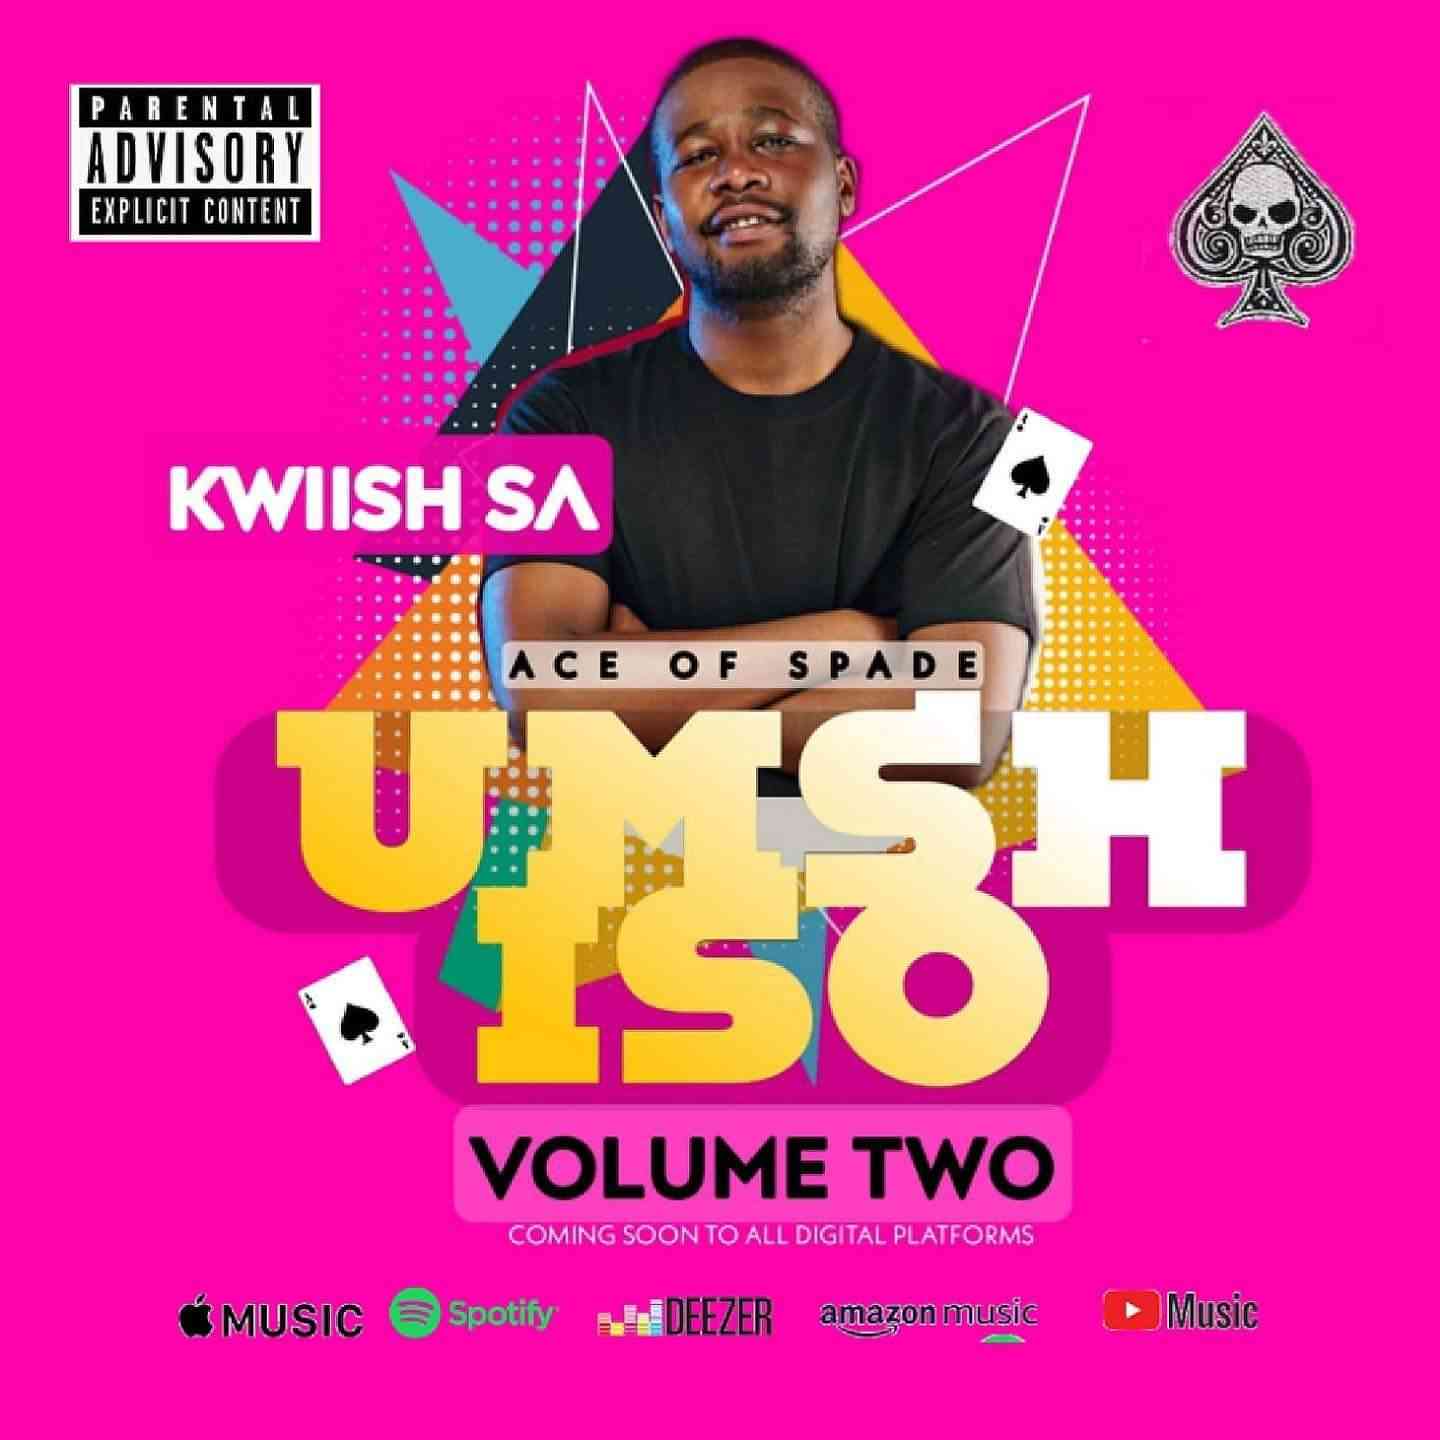 Kwiish SA Ready For Umshiso Vol. 2